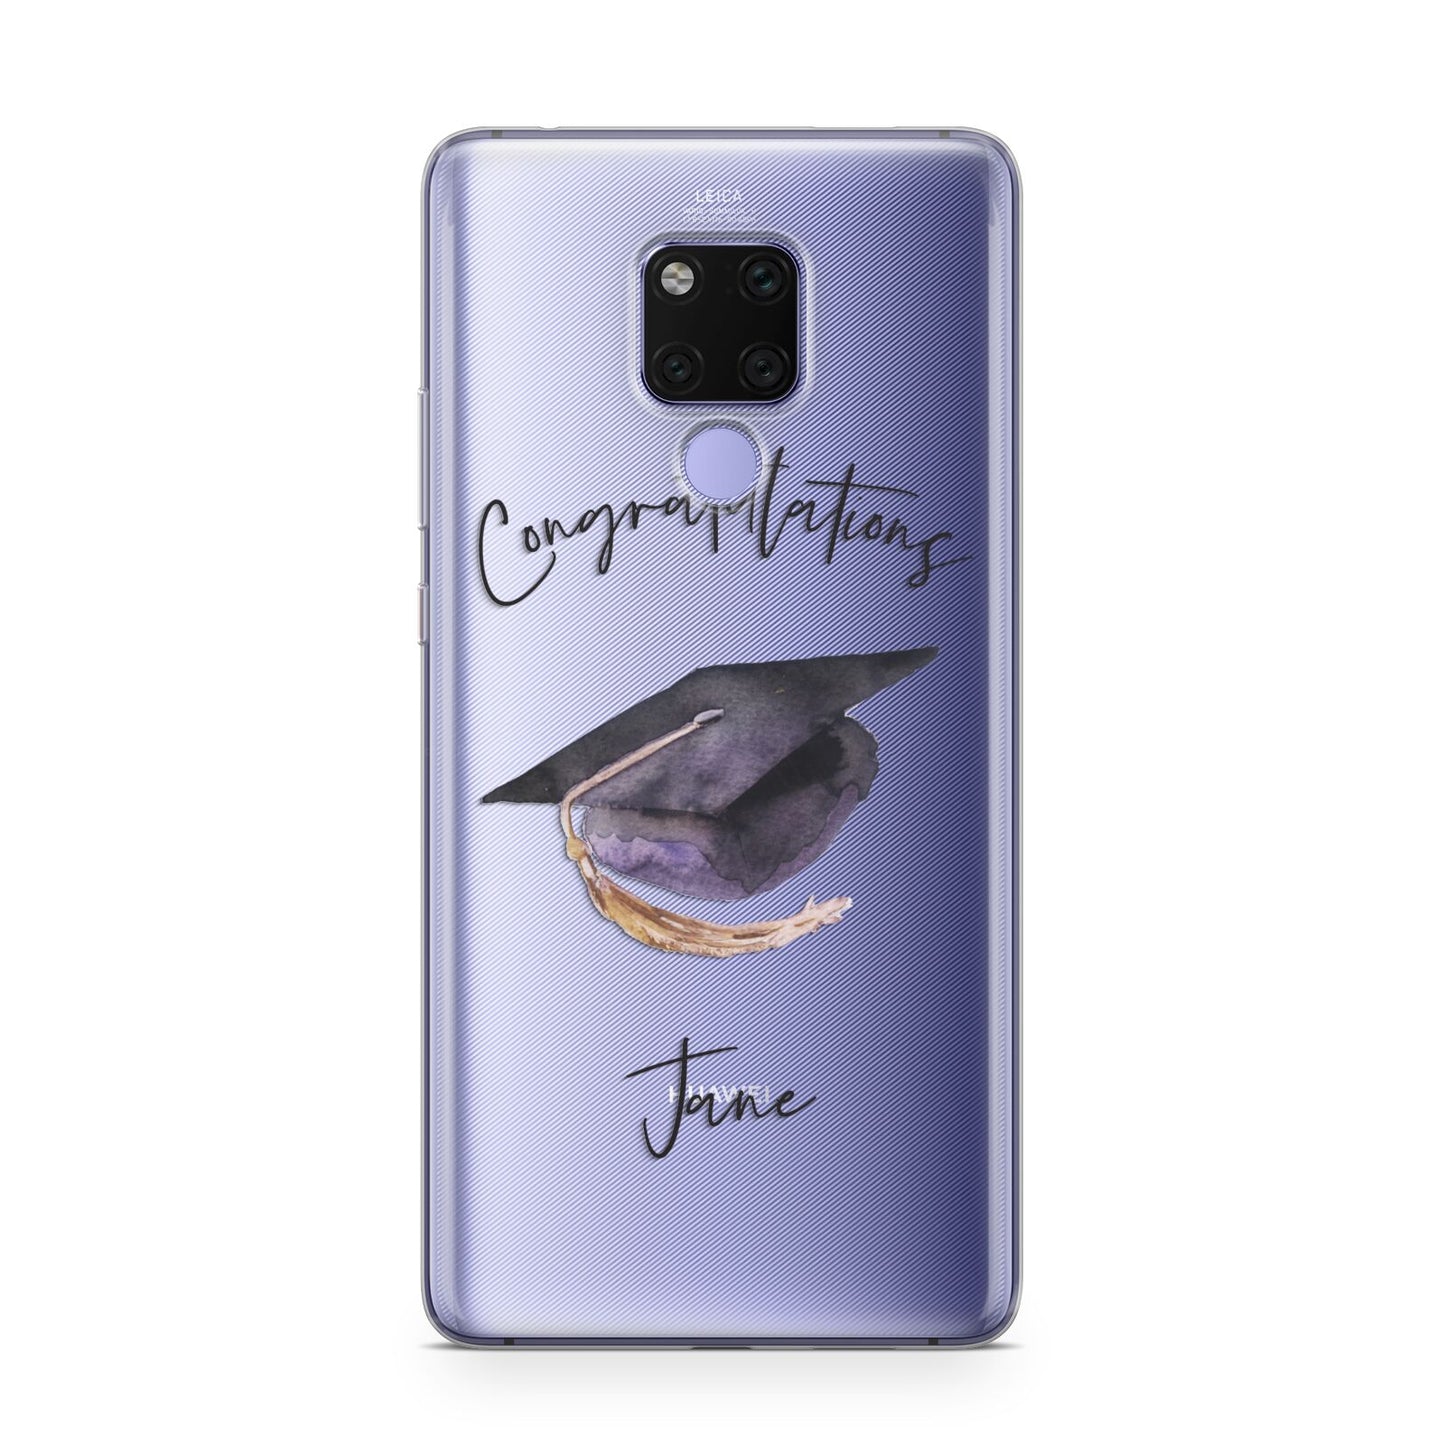 Congratulations Graduate Custom Huawei Mate 20X Phone Case